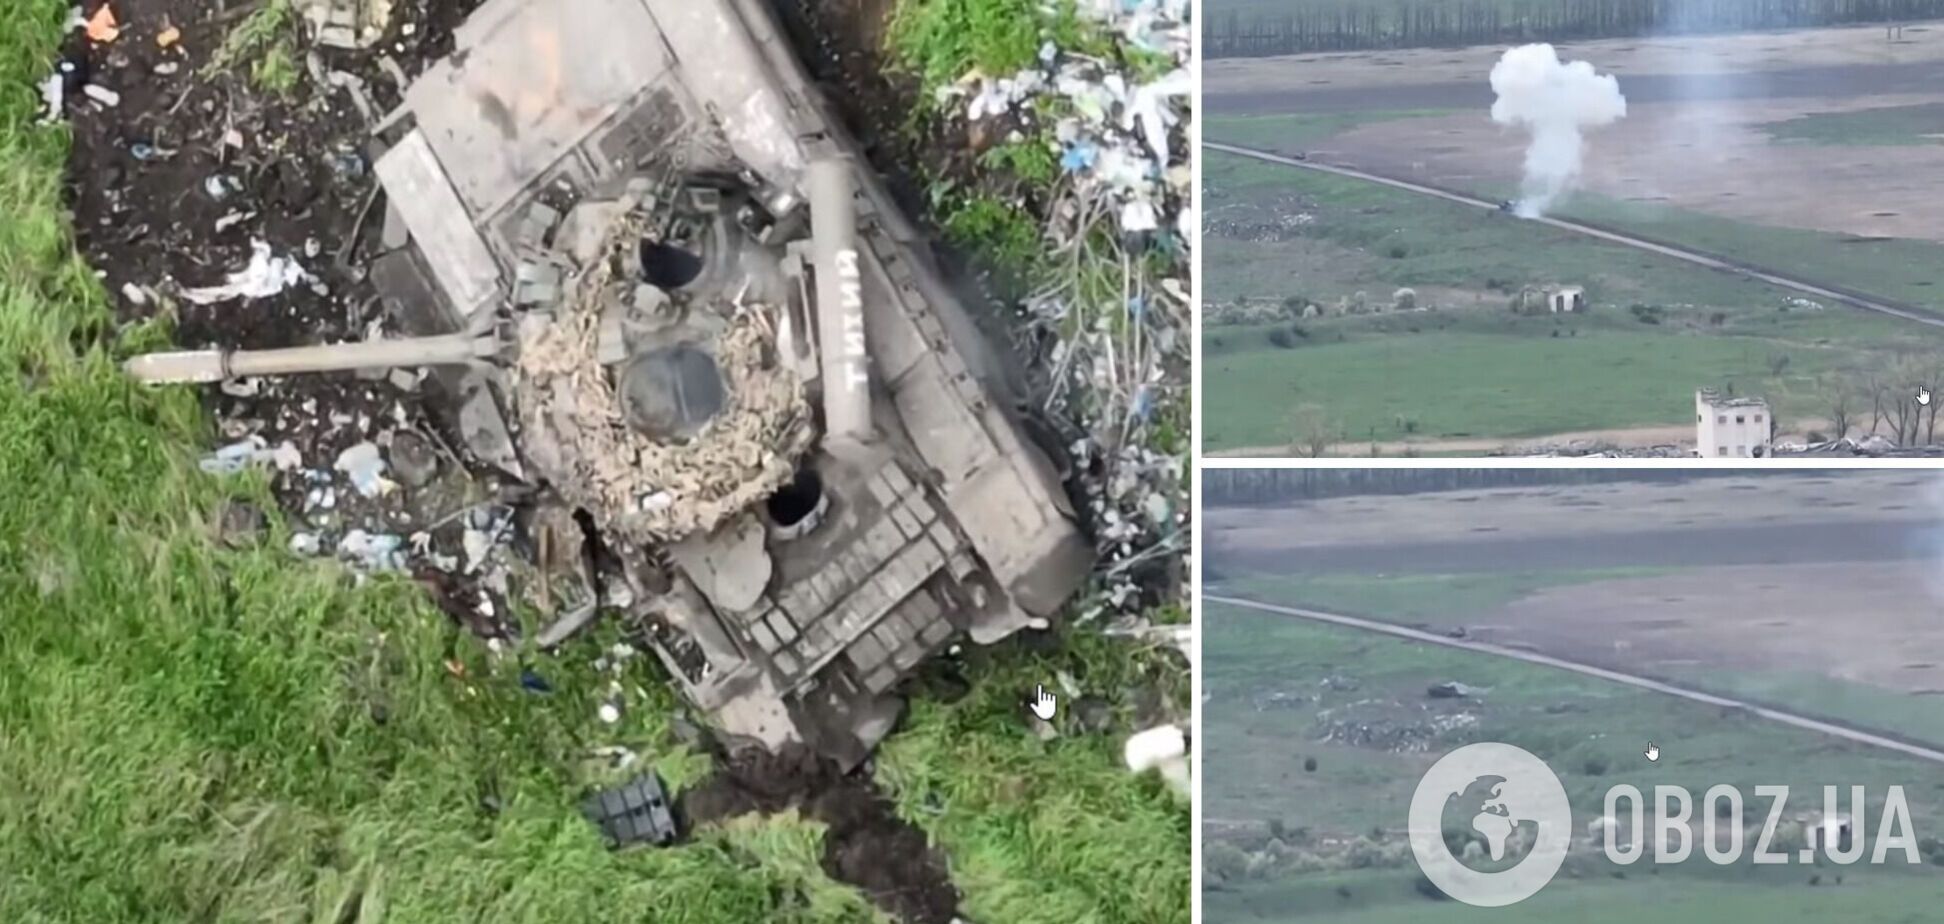 Охота удалась: украинские военные 'демилитаризовали' российский танк вместе с захватчиками. Зрелищное видео